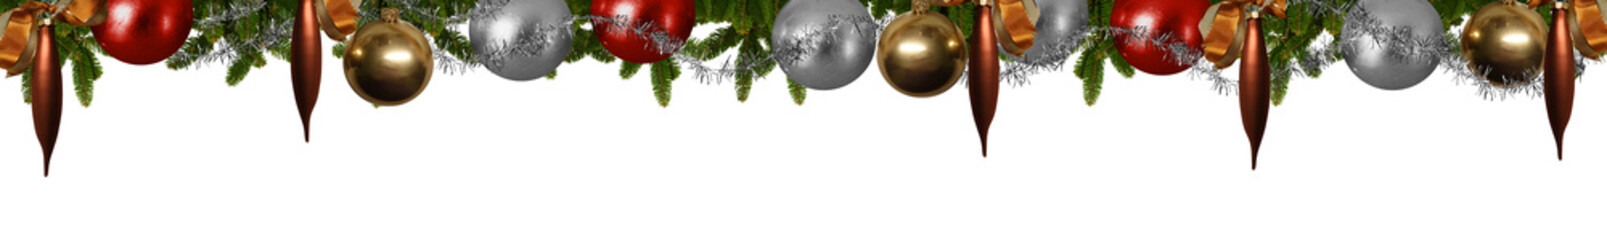 Weihnachtliches Panorama - Tannenzweige mit Christbaumkugeln